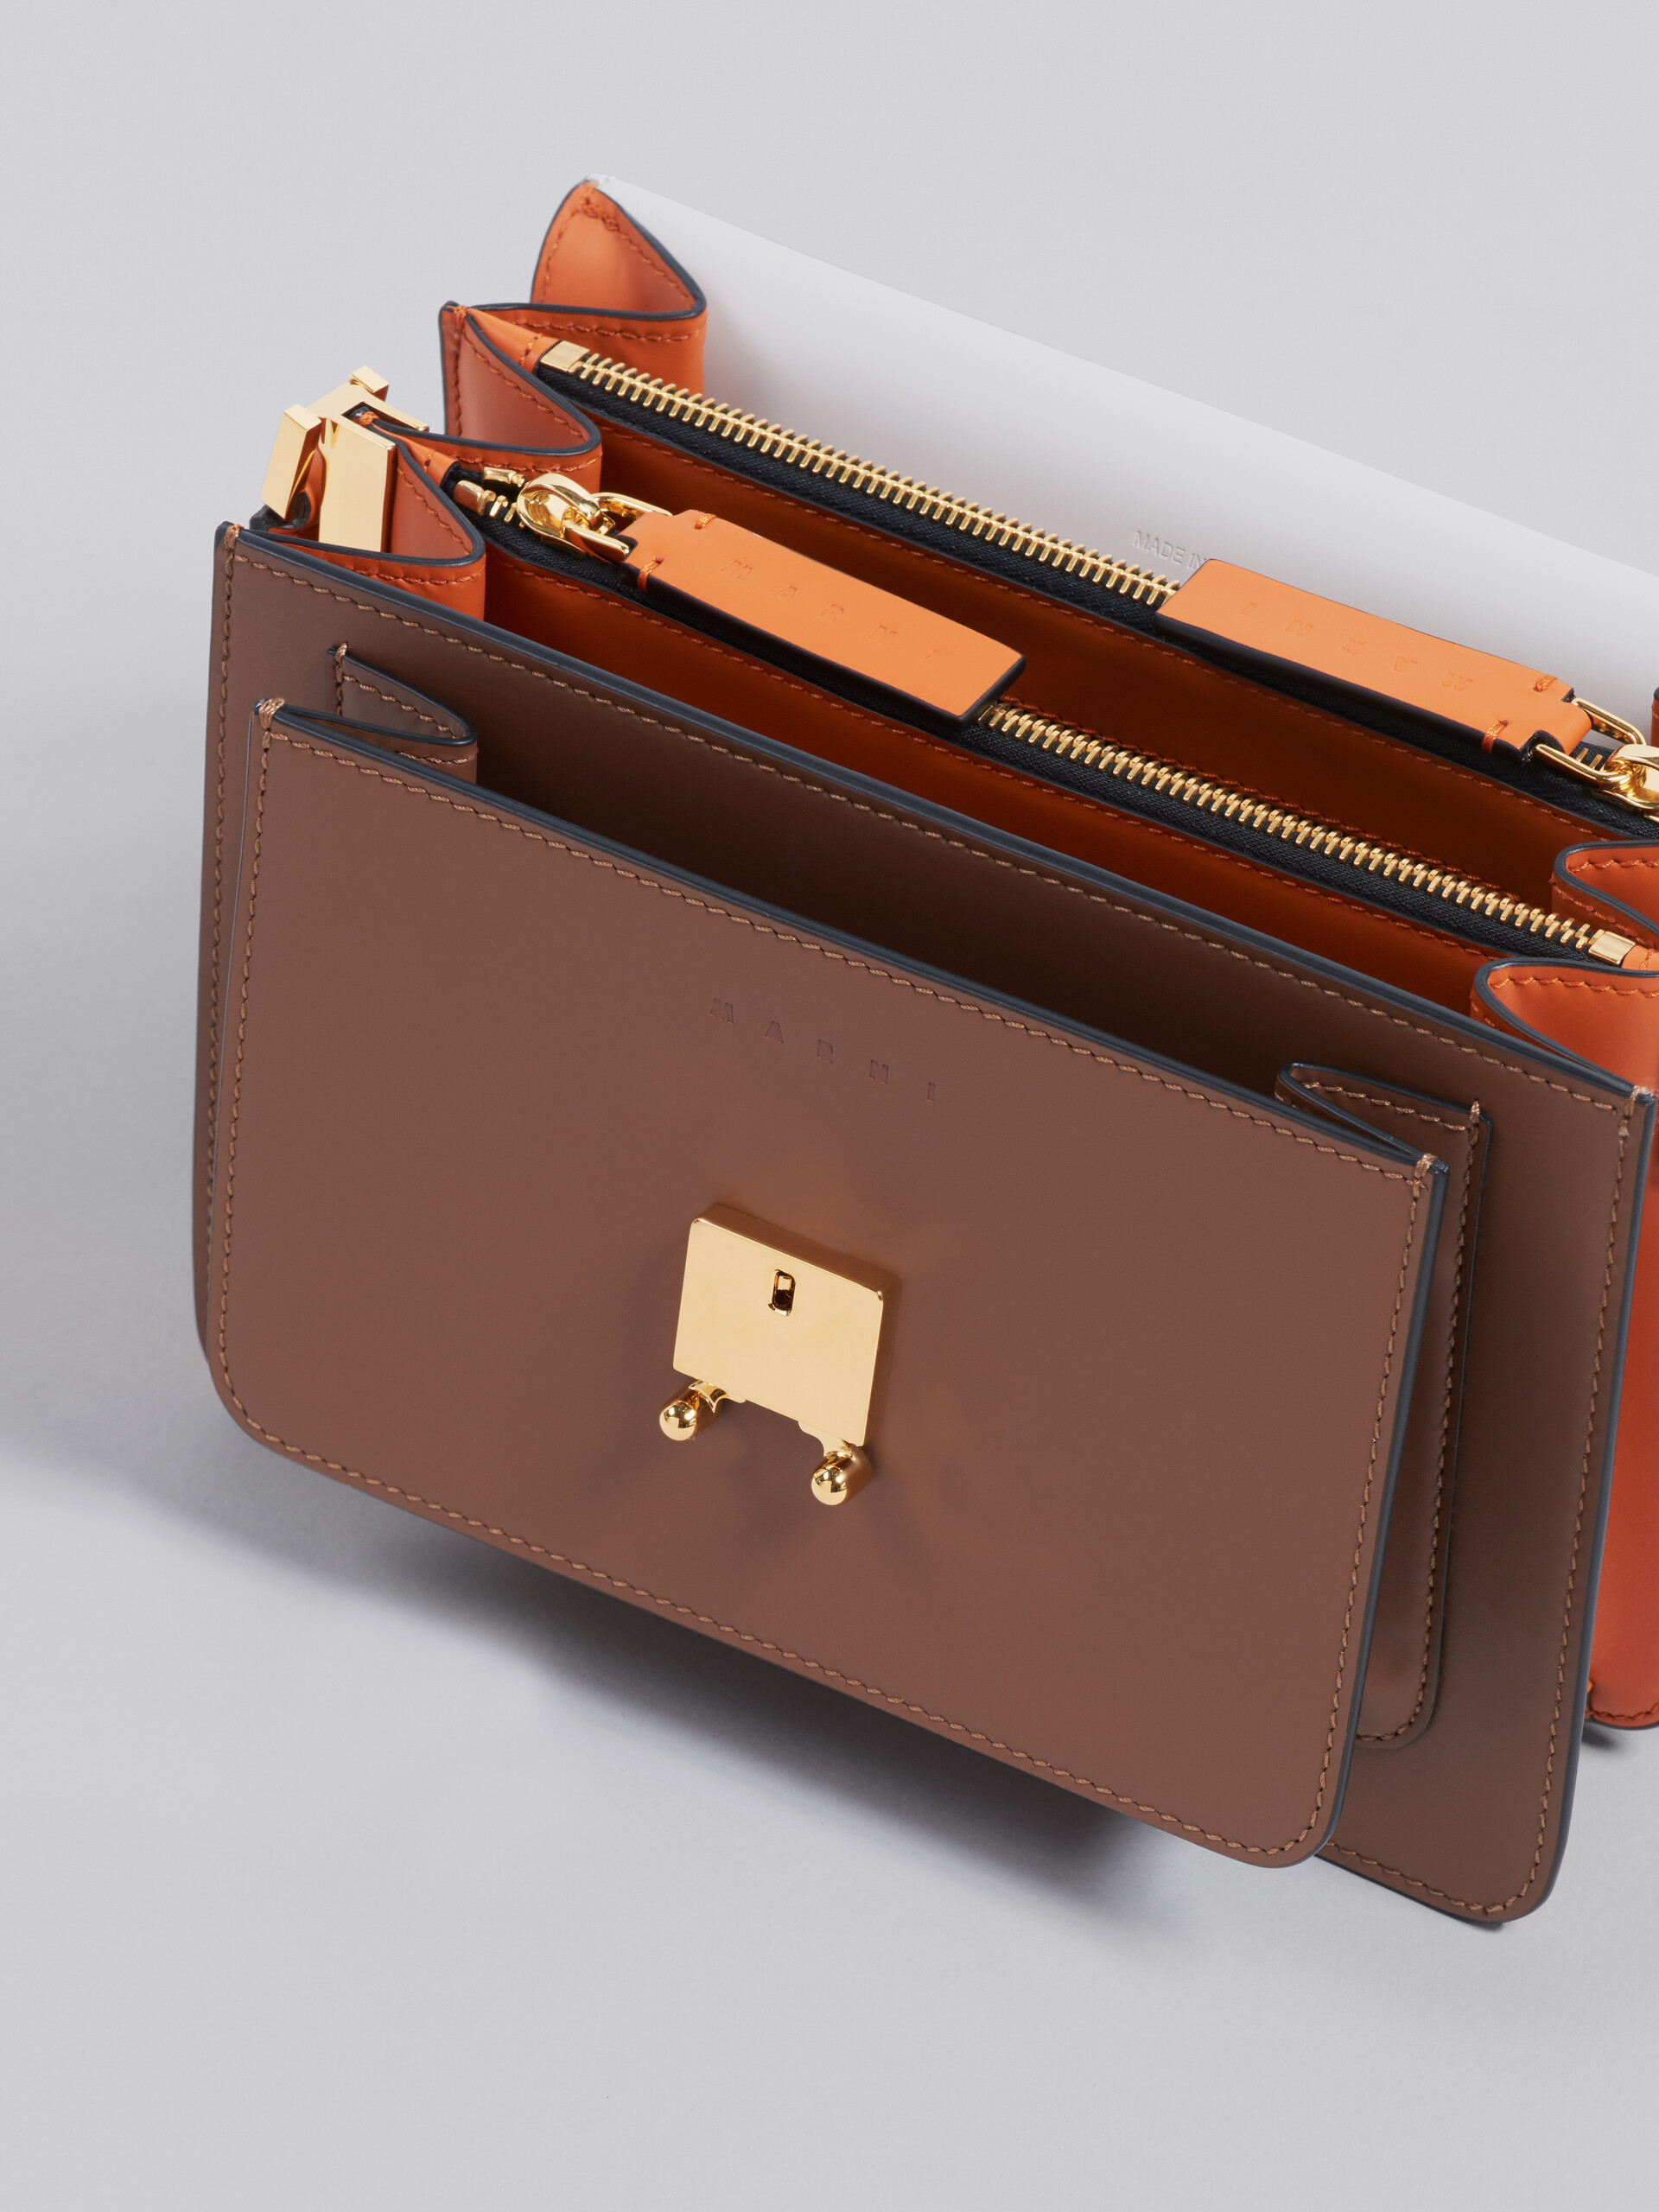 TRUNK medium bag in grey brown and orange leather - Shoulder Bag - Image 3